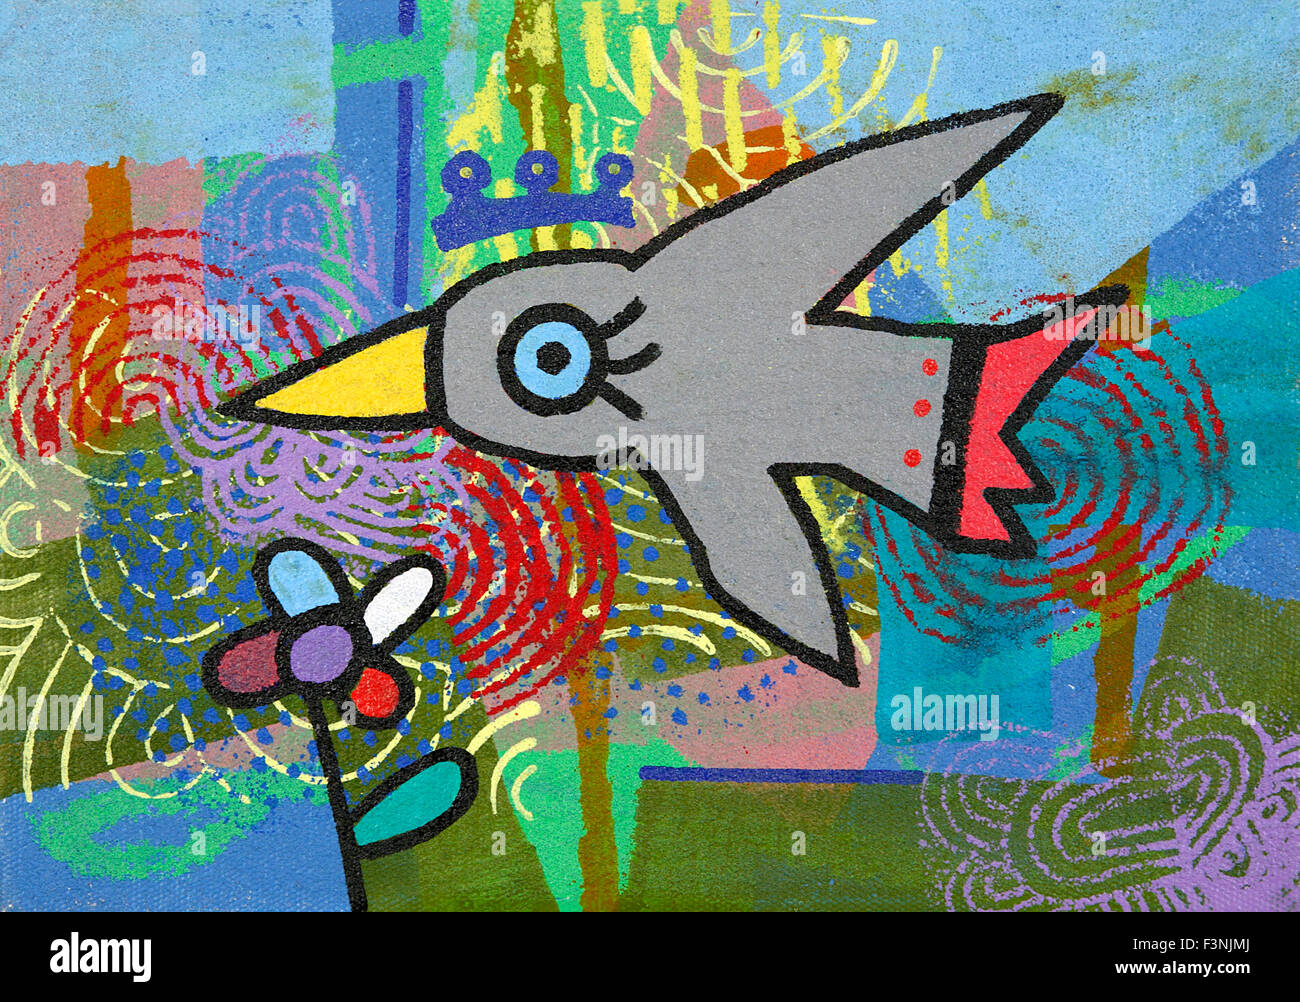 Leinwand mit Malerei aus deutschen Künstler Otmar Alt und israelischen Künstlers David Gerstein. Beit Shemesh, in der Nähe von Jerusalem, Israel Stockfoto